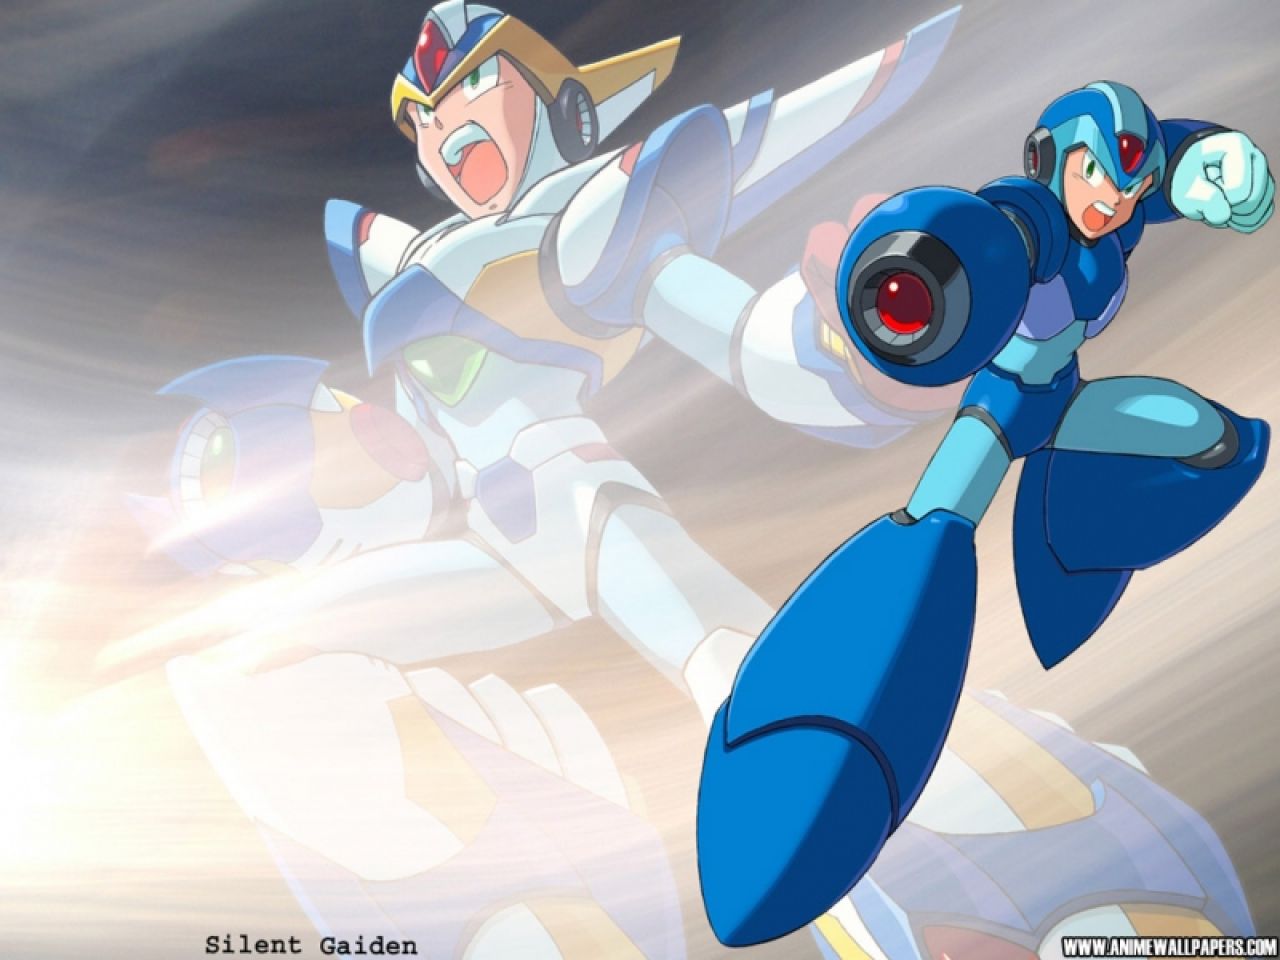 Les Traigo Unos Wallpaper De Mega Man Para Recordar Nuestra Infancia